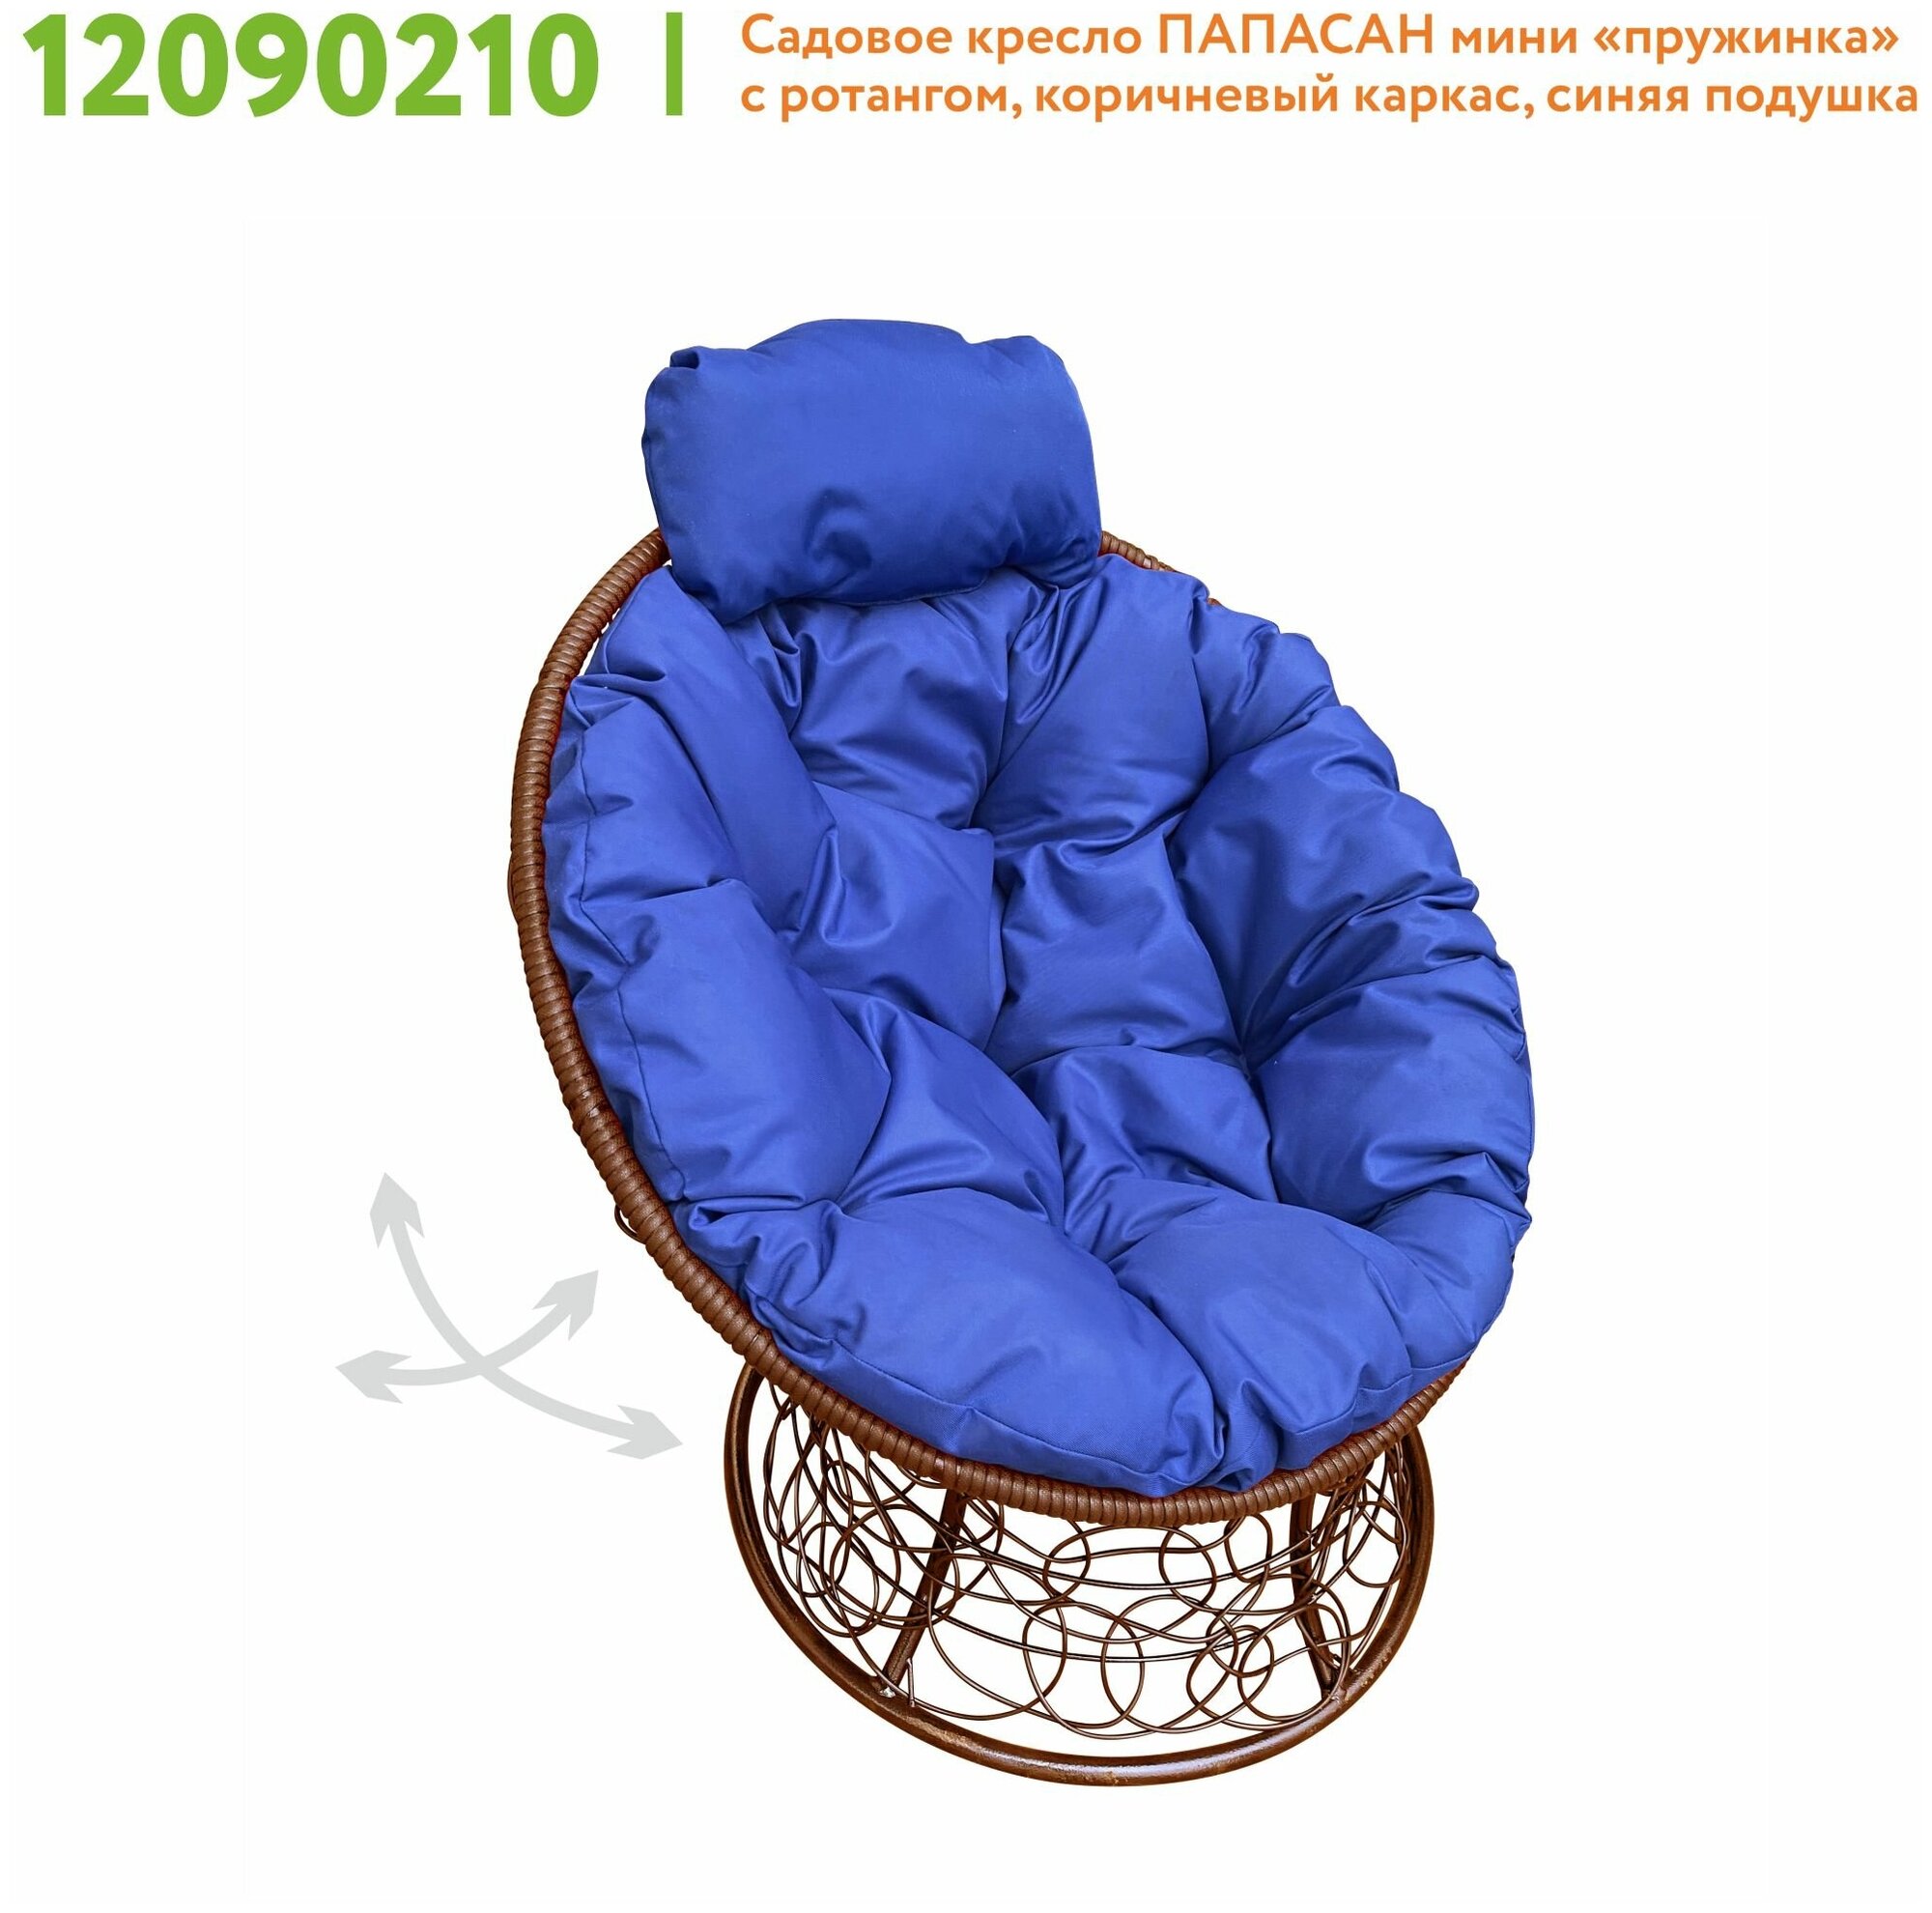 Кресло m-group папасан пружинка мини ротанг коричневое, синяя подушка - фотография № 2